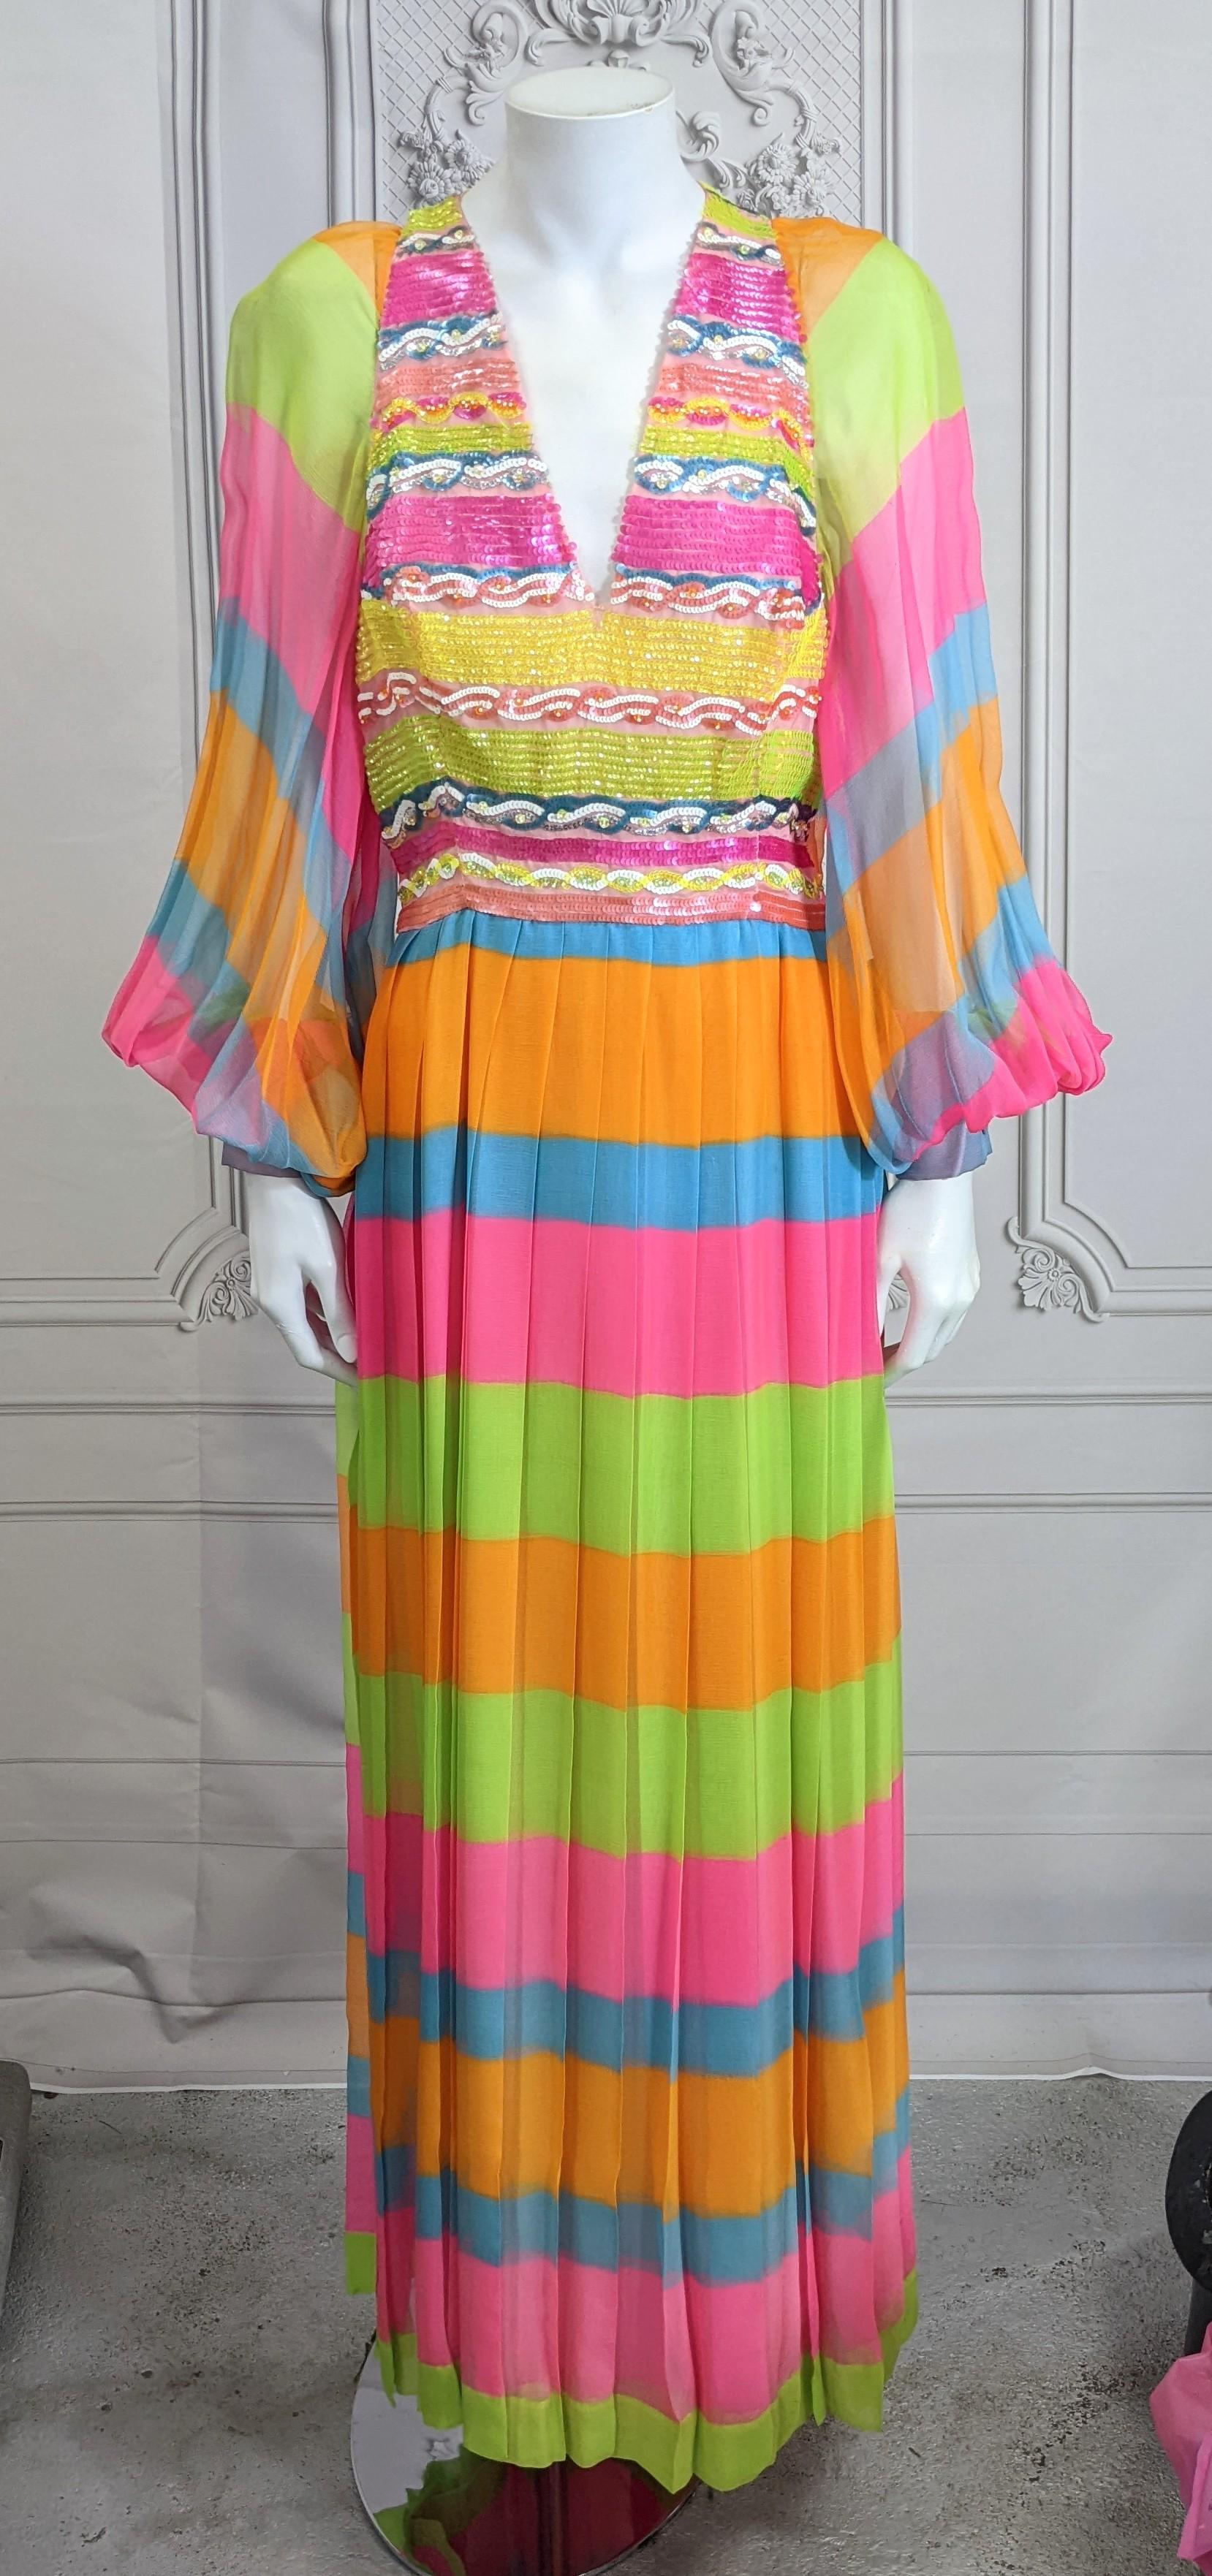 Erstaunlich Technicolor Seide Chiffon und Pailletten Kleid aus den 1970er Jahren. Das Label des Designers wurde entfernt, aber die Qualität ist sehr gut. Leuchtend tropisch gestreifter Seidenchiffon mit farblich passendem Mieder und Taillenband aus